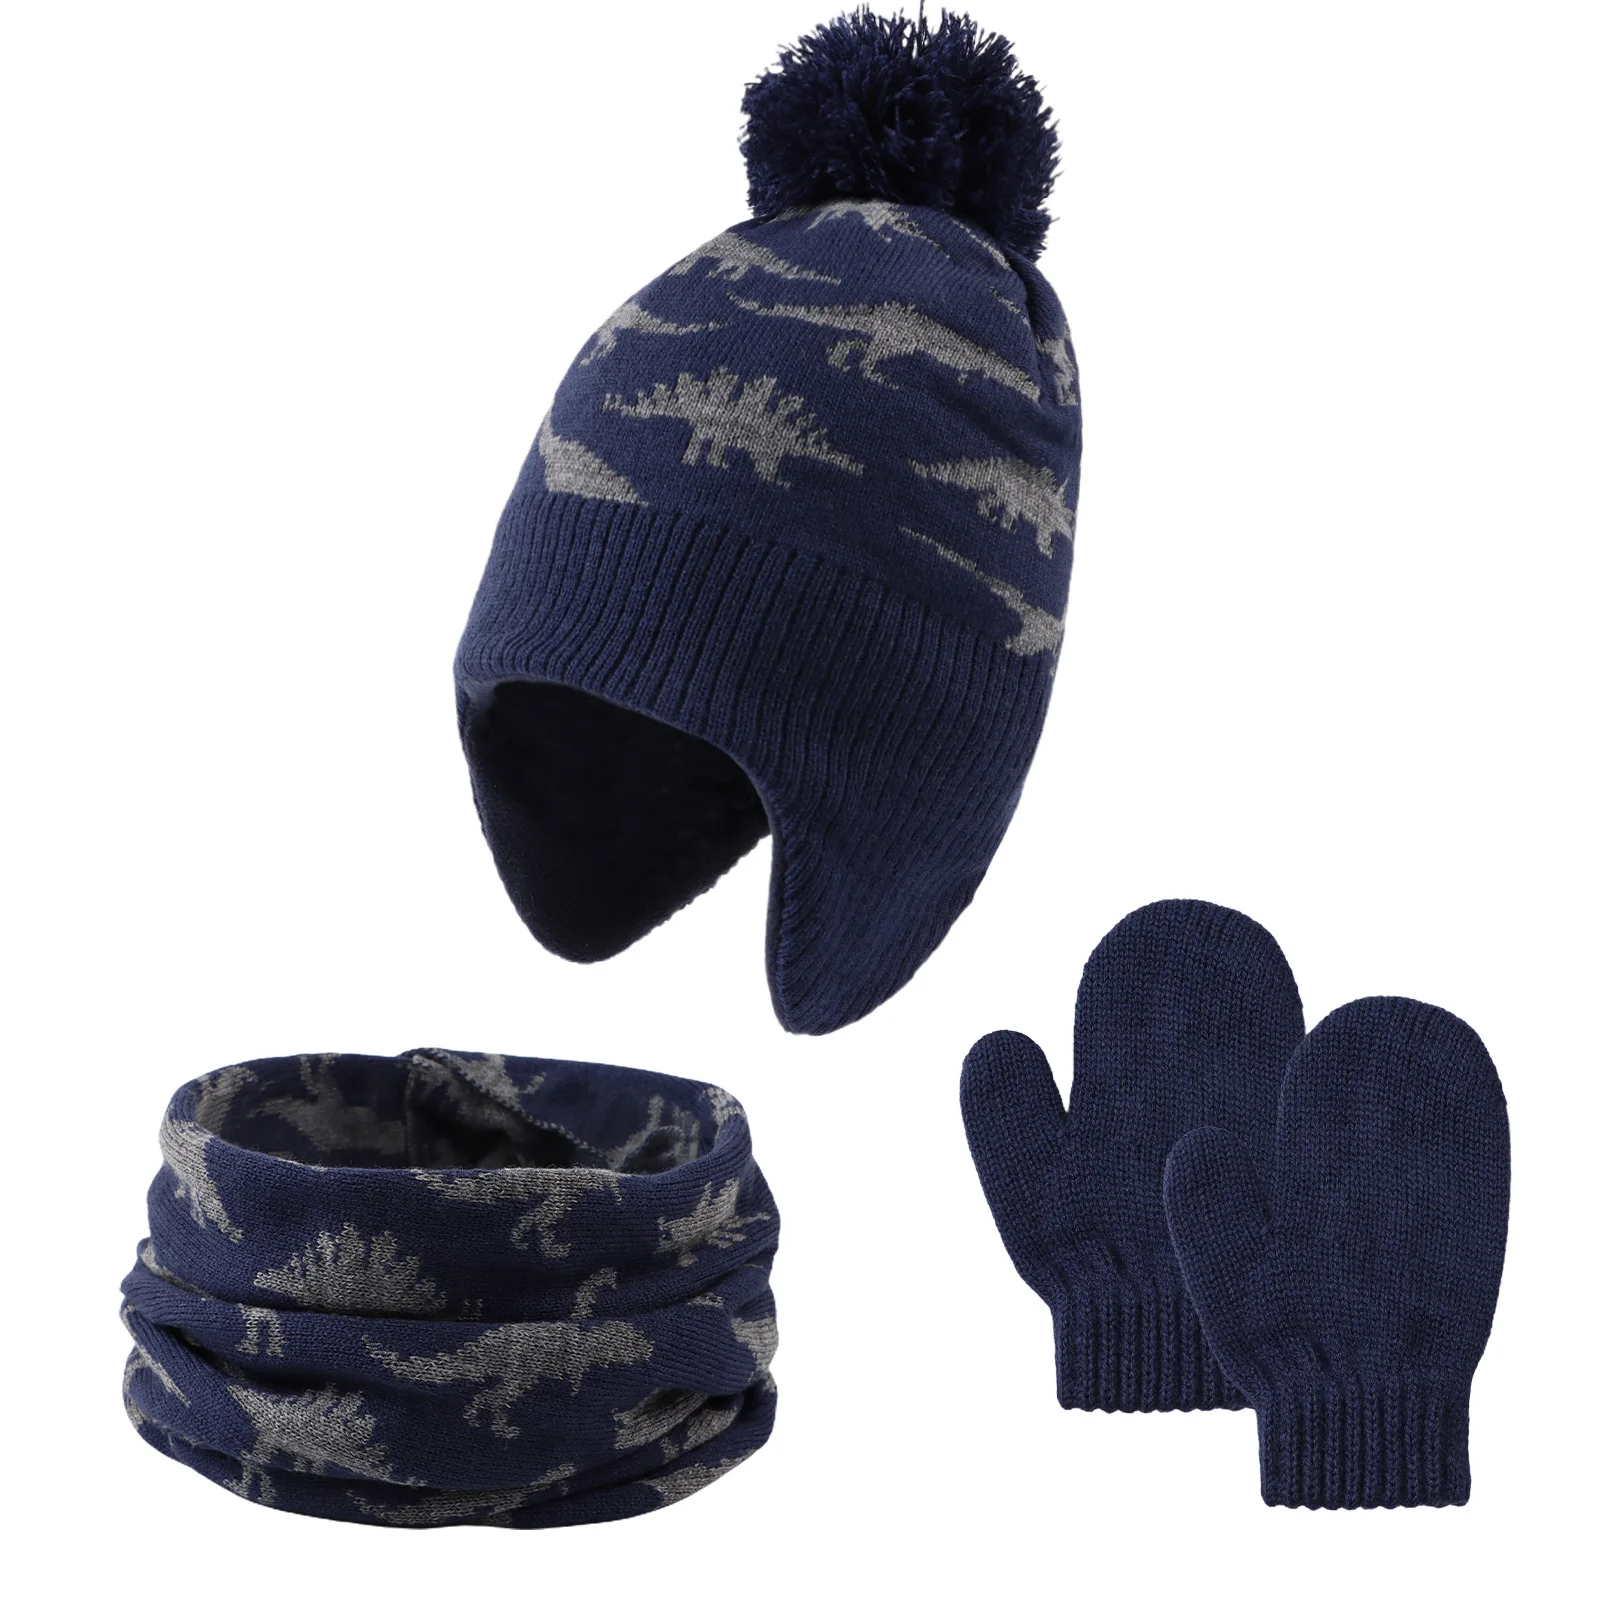 Tanio Kapelusz rękawiczki szalik dla chłopca zimowy ciepły zestaw dla sklep